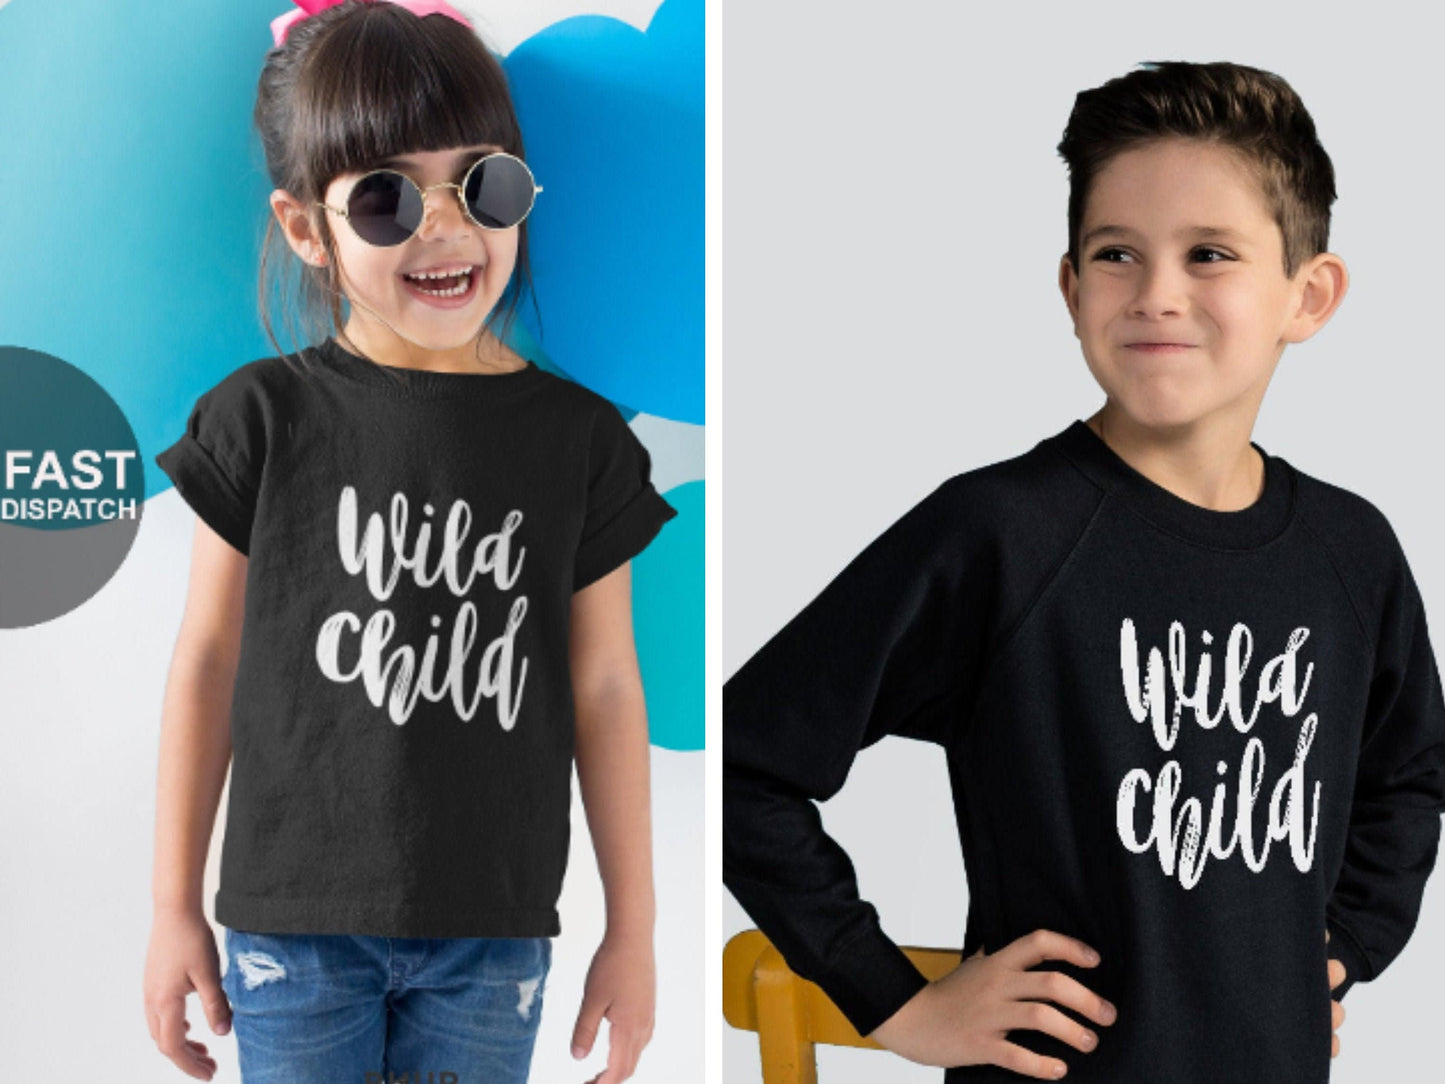 Wild Child T-Shirt/Sweatshirt, Kids Funny Sweatshirt, Unisex Childrens Shirt/Sweatshirt, Birthday T-Shirt